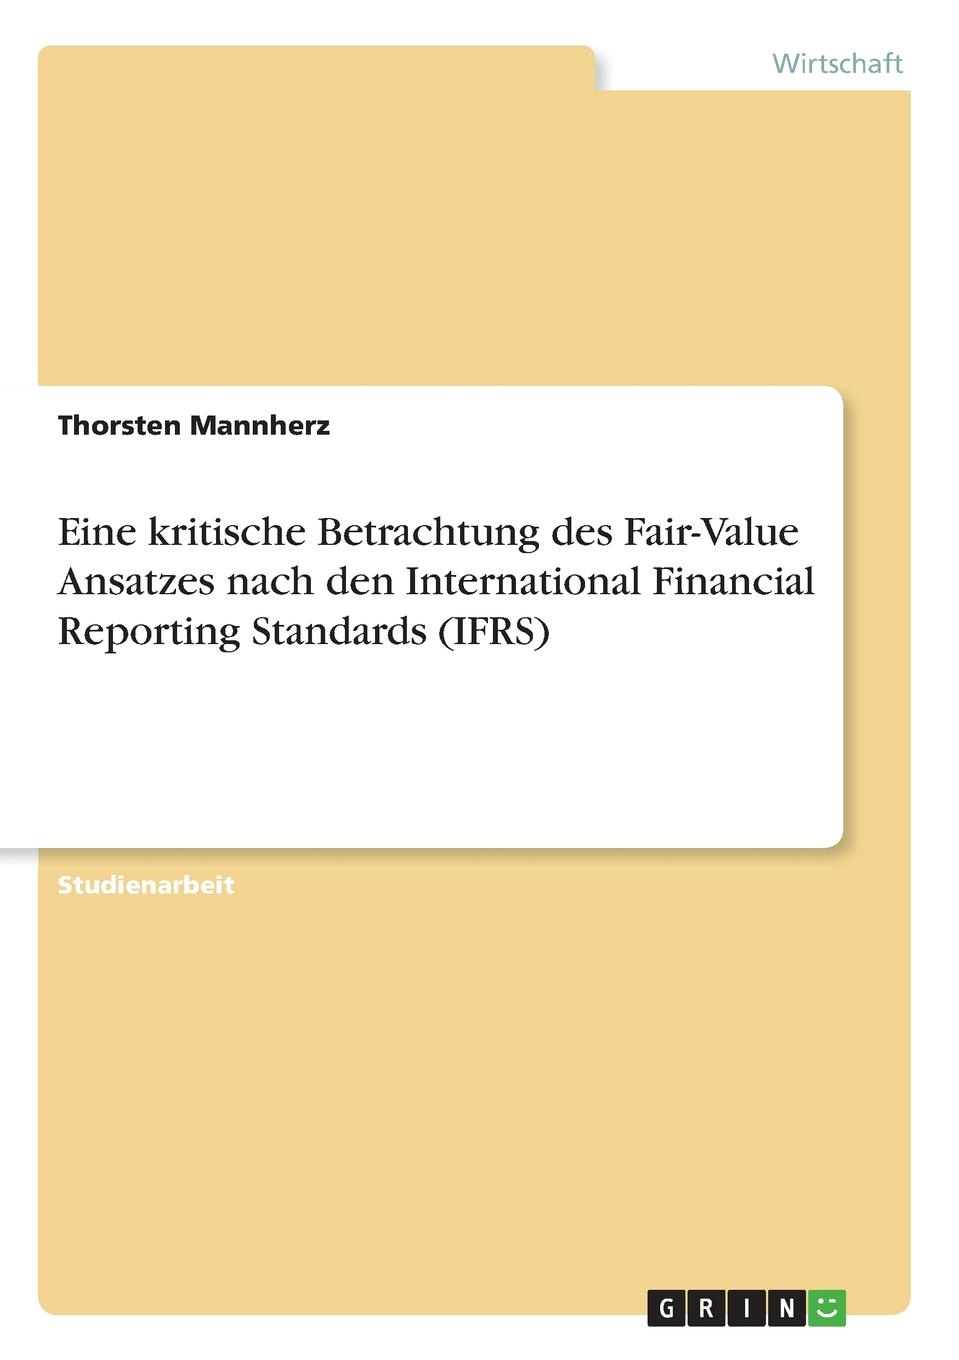 фото Eine kritische Betrachtung des Fair-Value Ansatzes nach den International Financial Reporting Standards (IFRS)